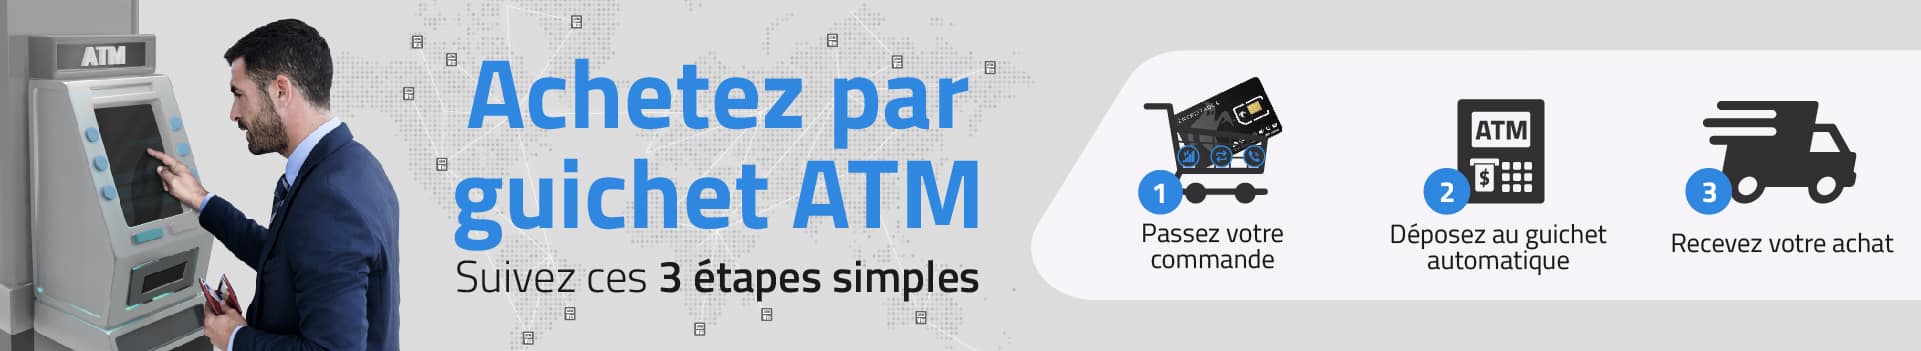 encriptados banner ATM 001 frances